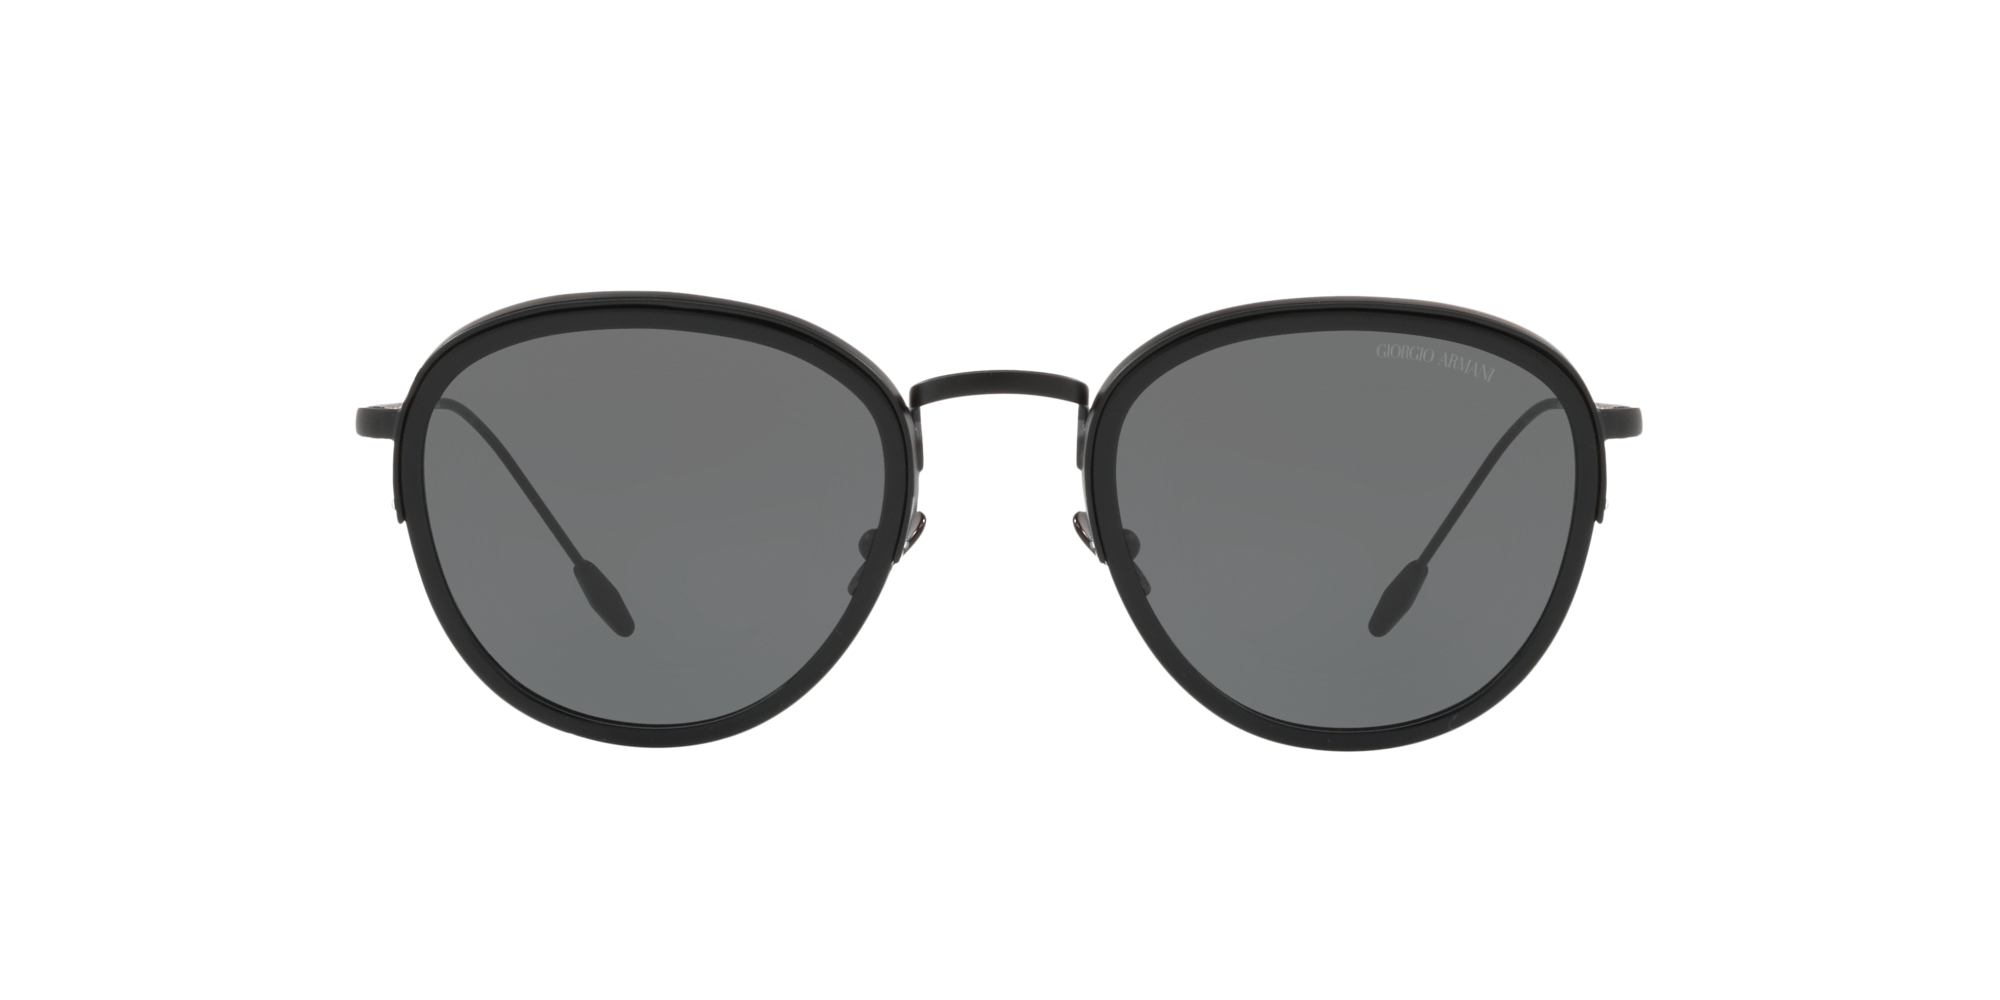 [products.image.front] Giorgio Armani AR 6068 Sunglasses